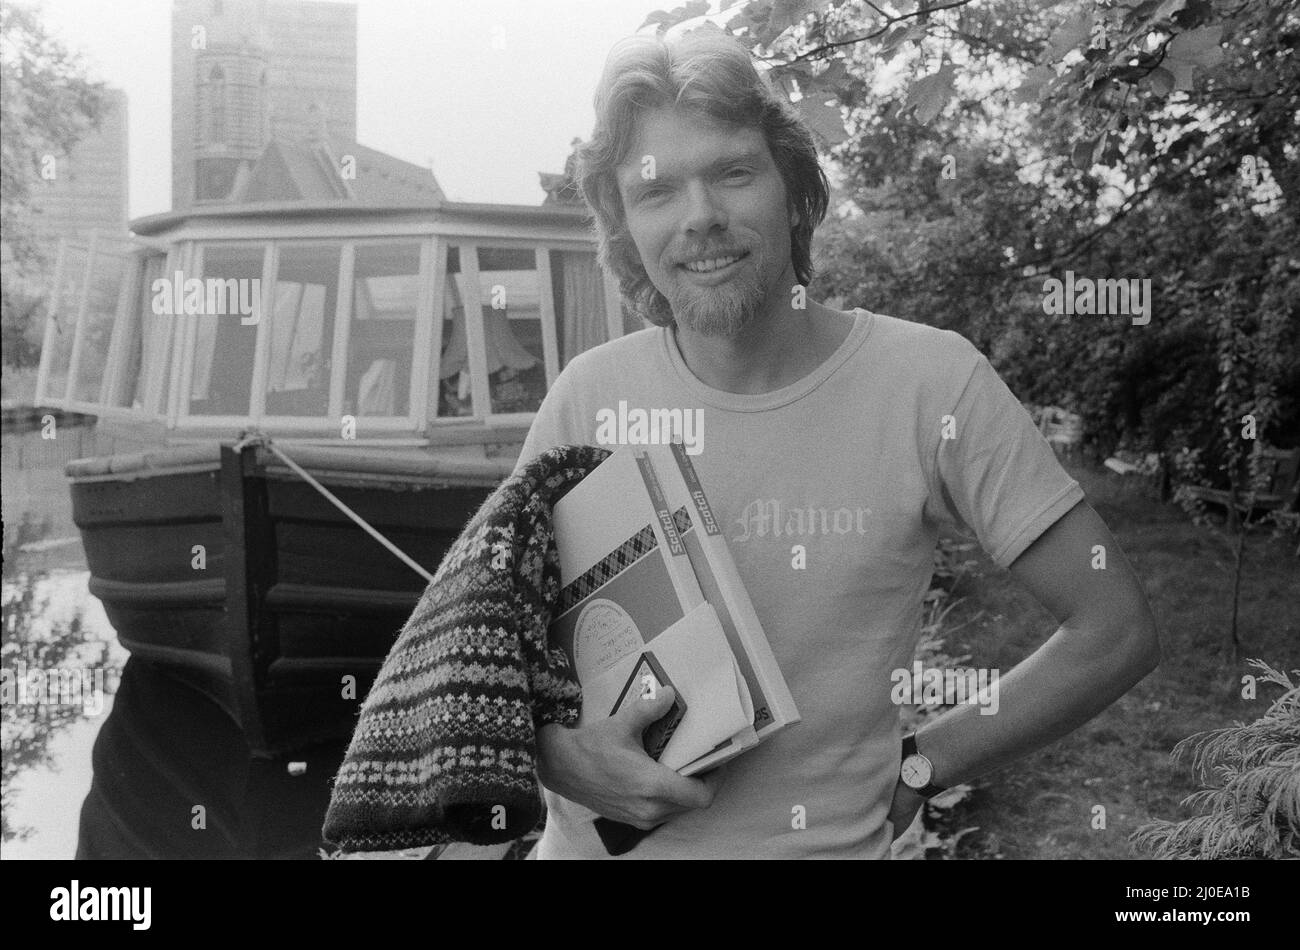 Richard Branson, chef d'œuvre de 28 ans derrière la compagnie Virgin Music. Vu ici va travailler. Dans cet ensemble de 21 photos , Richard est vu se détendre sur sa péniche, aller au travail, dans son studio d'enregistrement la maison de ville à l'ouest de Londres, et dans la toute nouvelle Virgin Mega Store avec quelques-uns des £3 000 000 de la valeur des disques et des cassettes en arrière-plan. Photo de Bill Rowntree photo prise le 4th juillet 1979 Banque D'Images